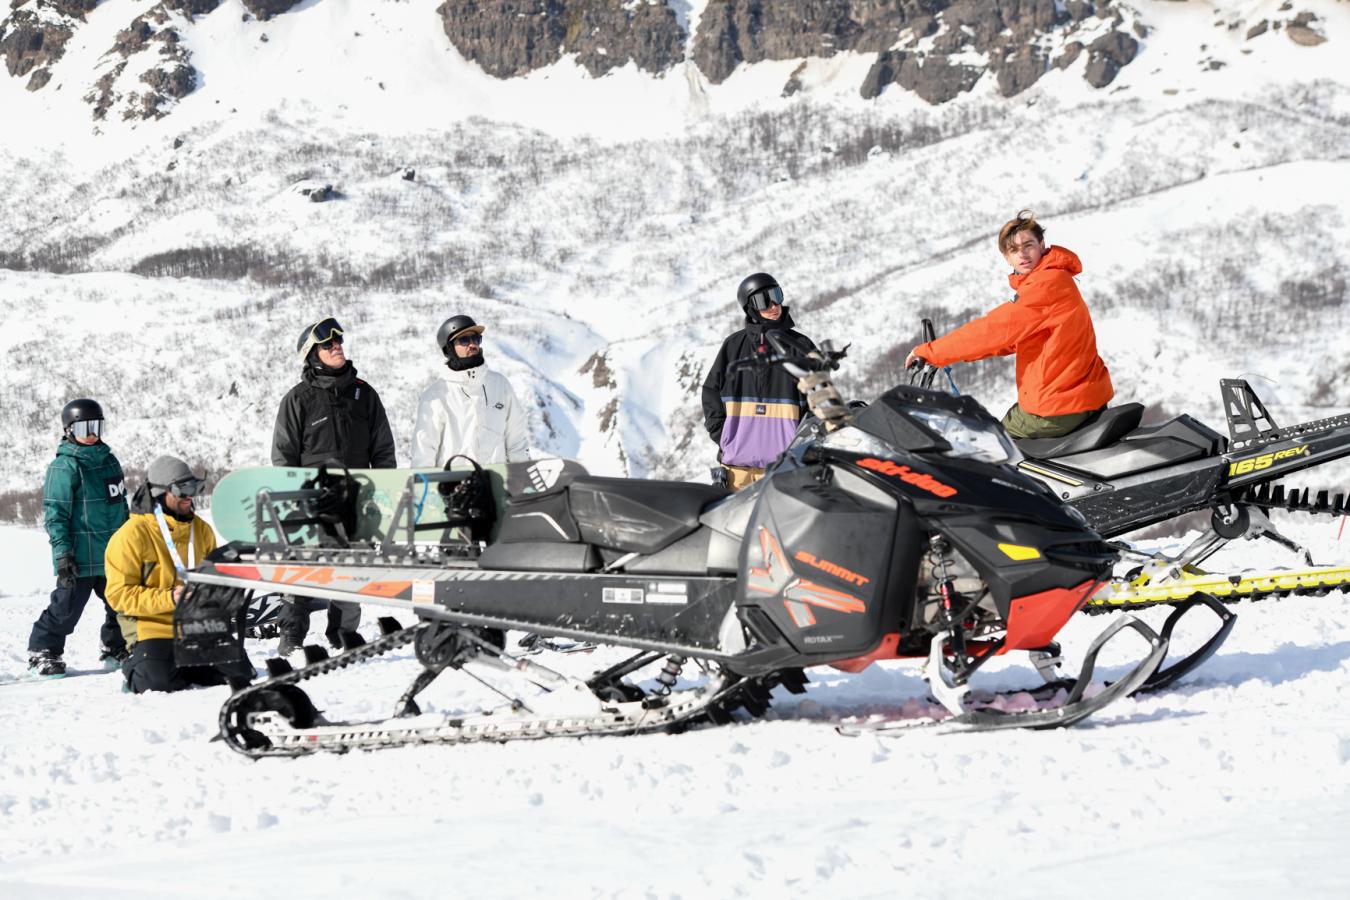 Imagen El team casi completo en los días que subieron con motos de nieve.